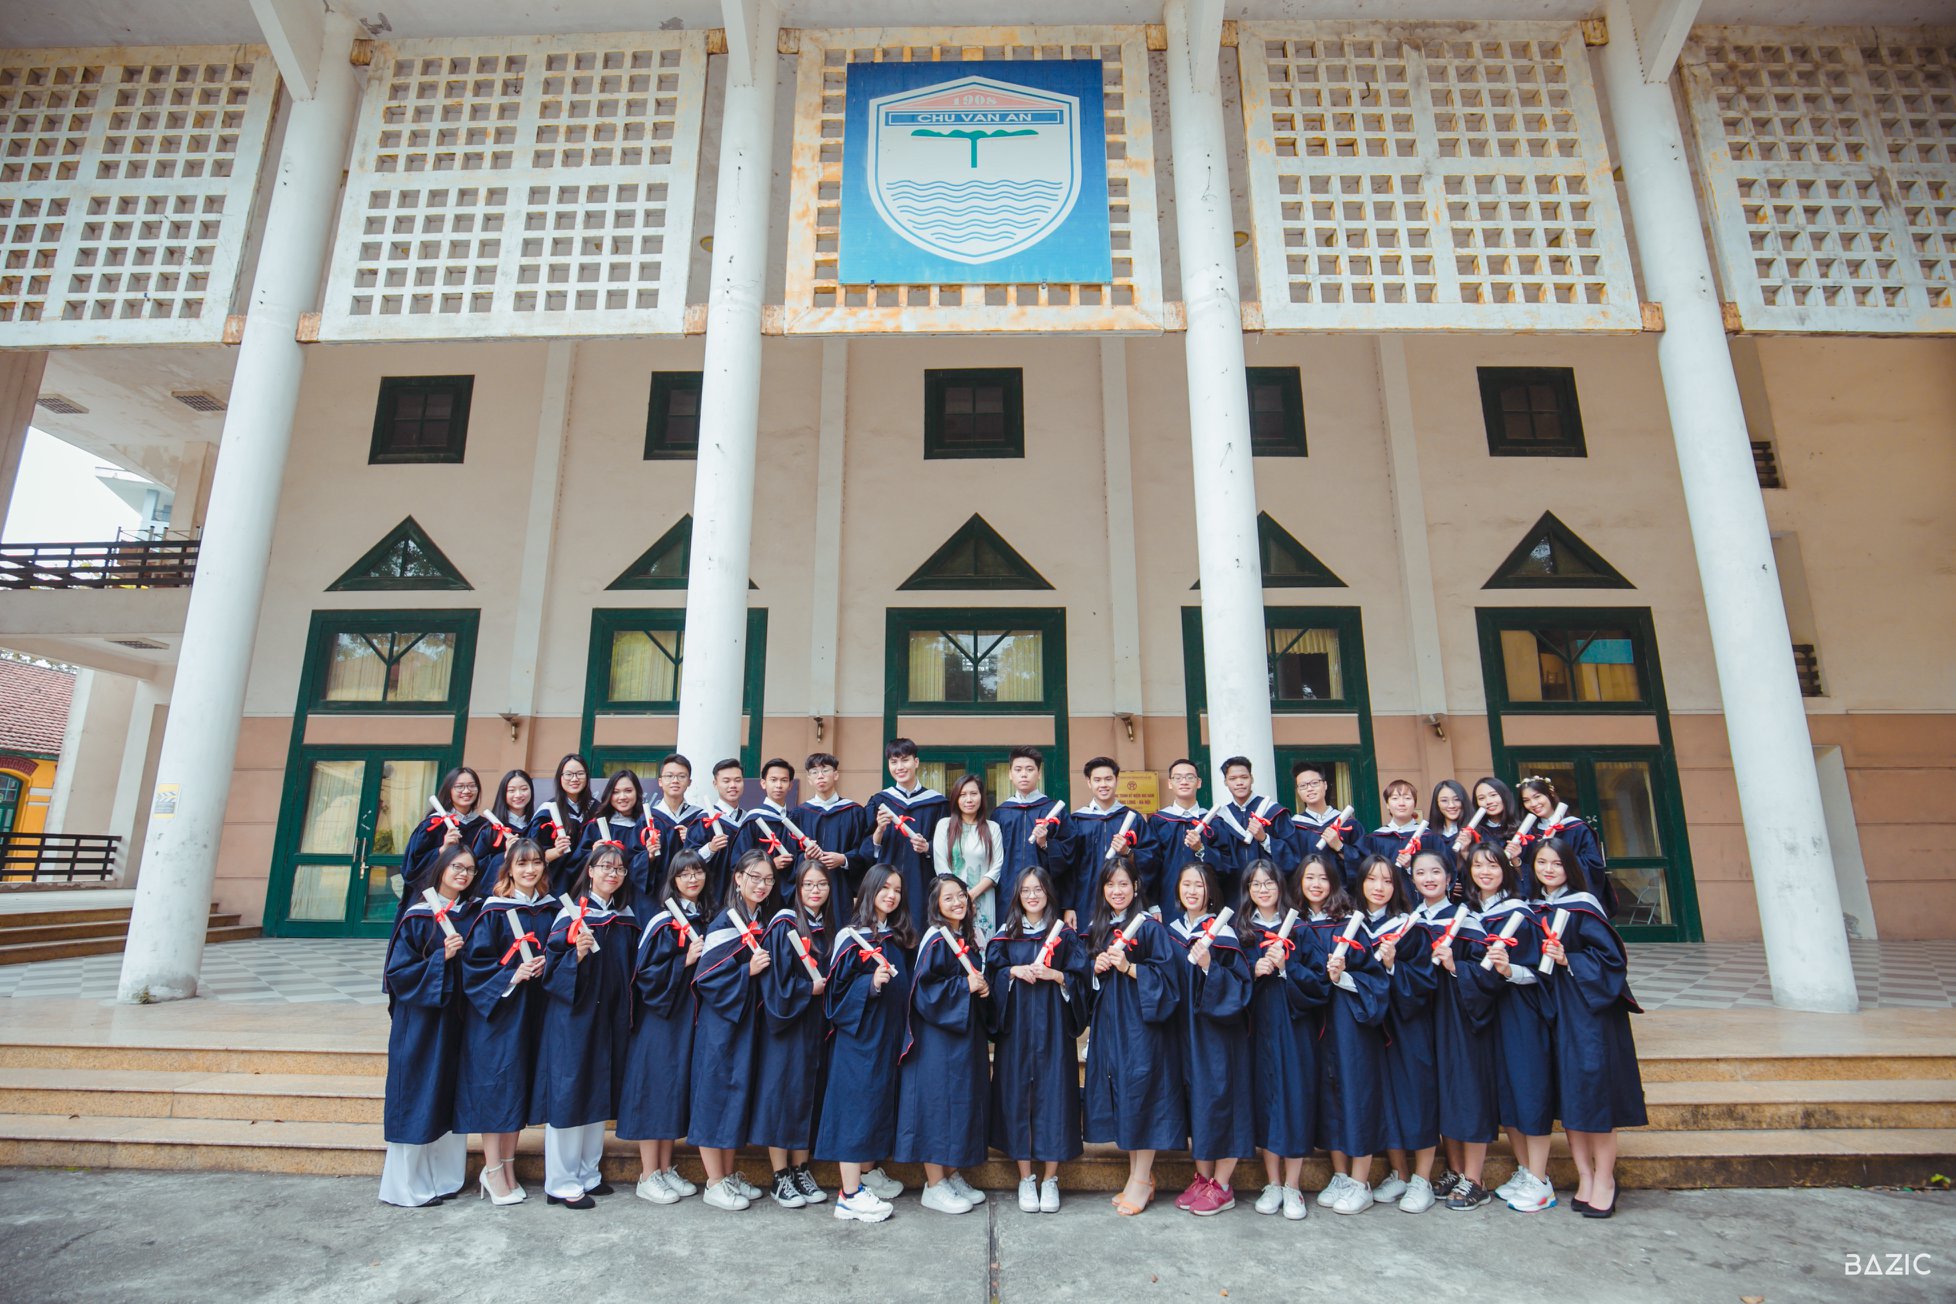 Trường THPT Chu Văn An được thành lập cách đây hơn 100 năm.